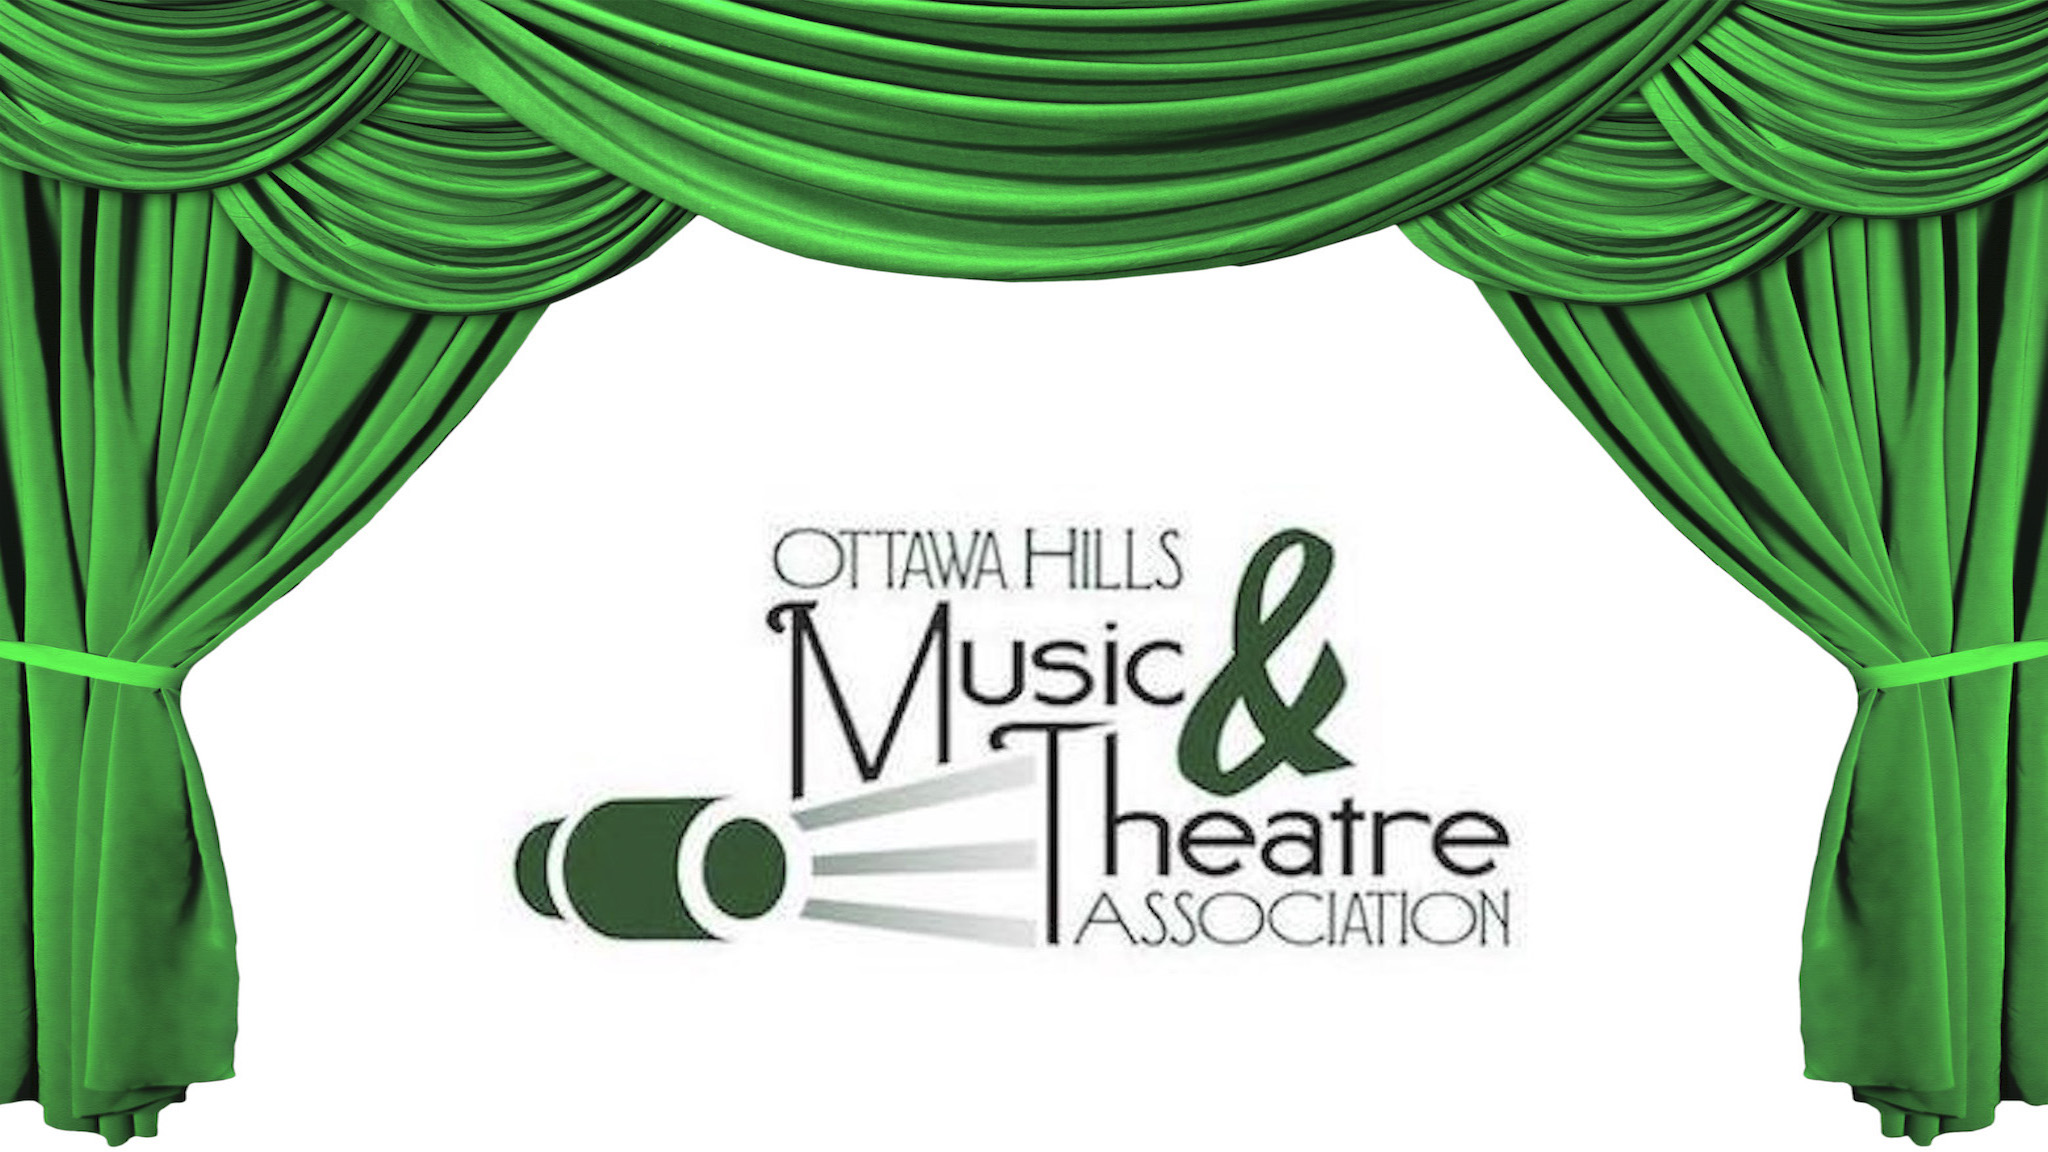 Ottawa Hills Music & Theatre Association